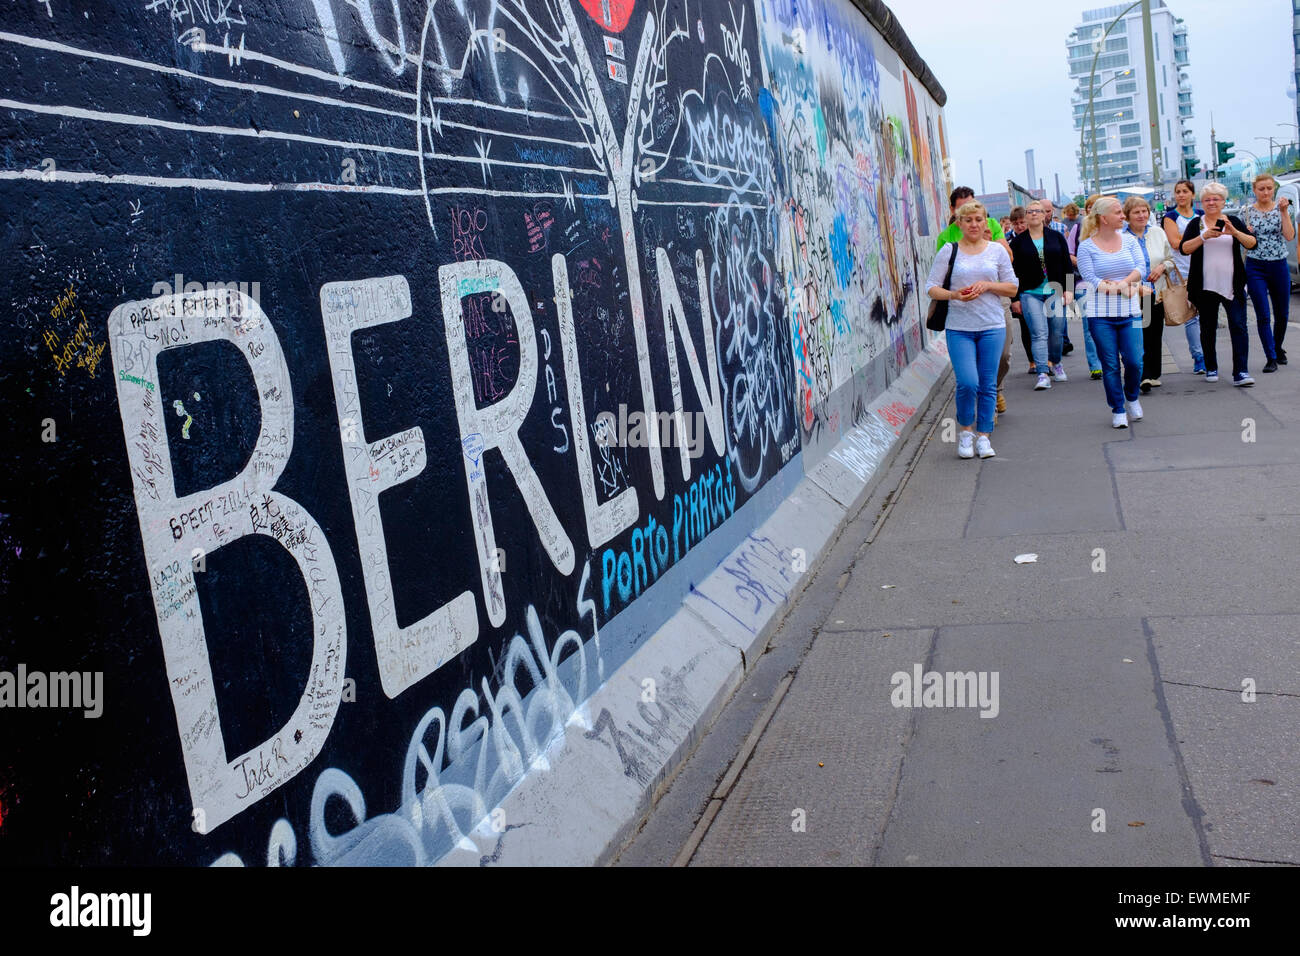 I turisti a piedi passato del muro di Berlino la sezione rimanente a East side gallery con numerosi murales e graffiti a Friedrichshain Foto Stock